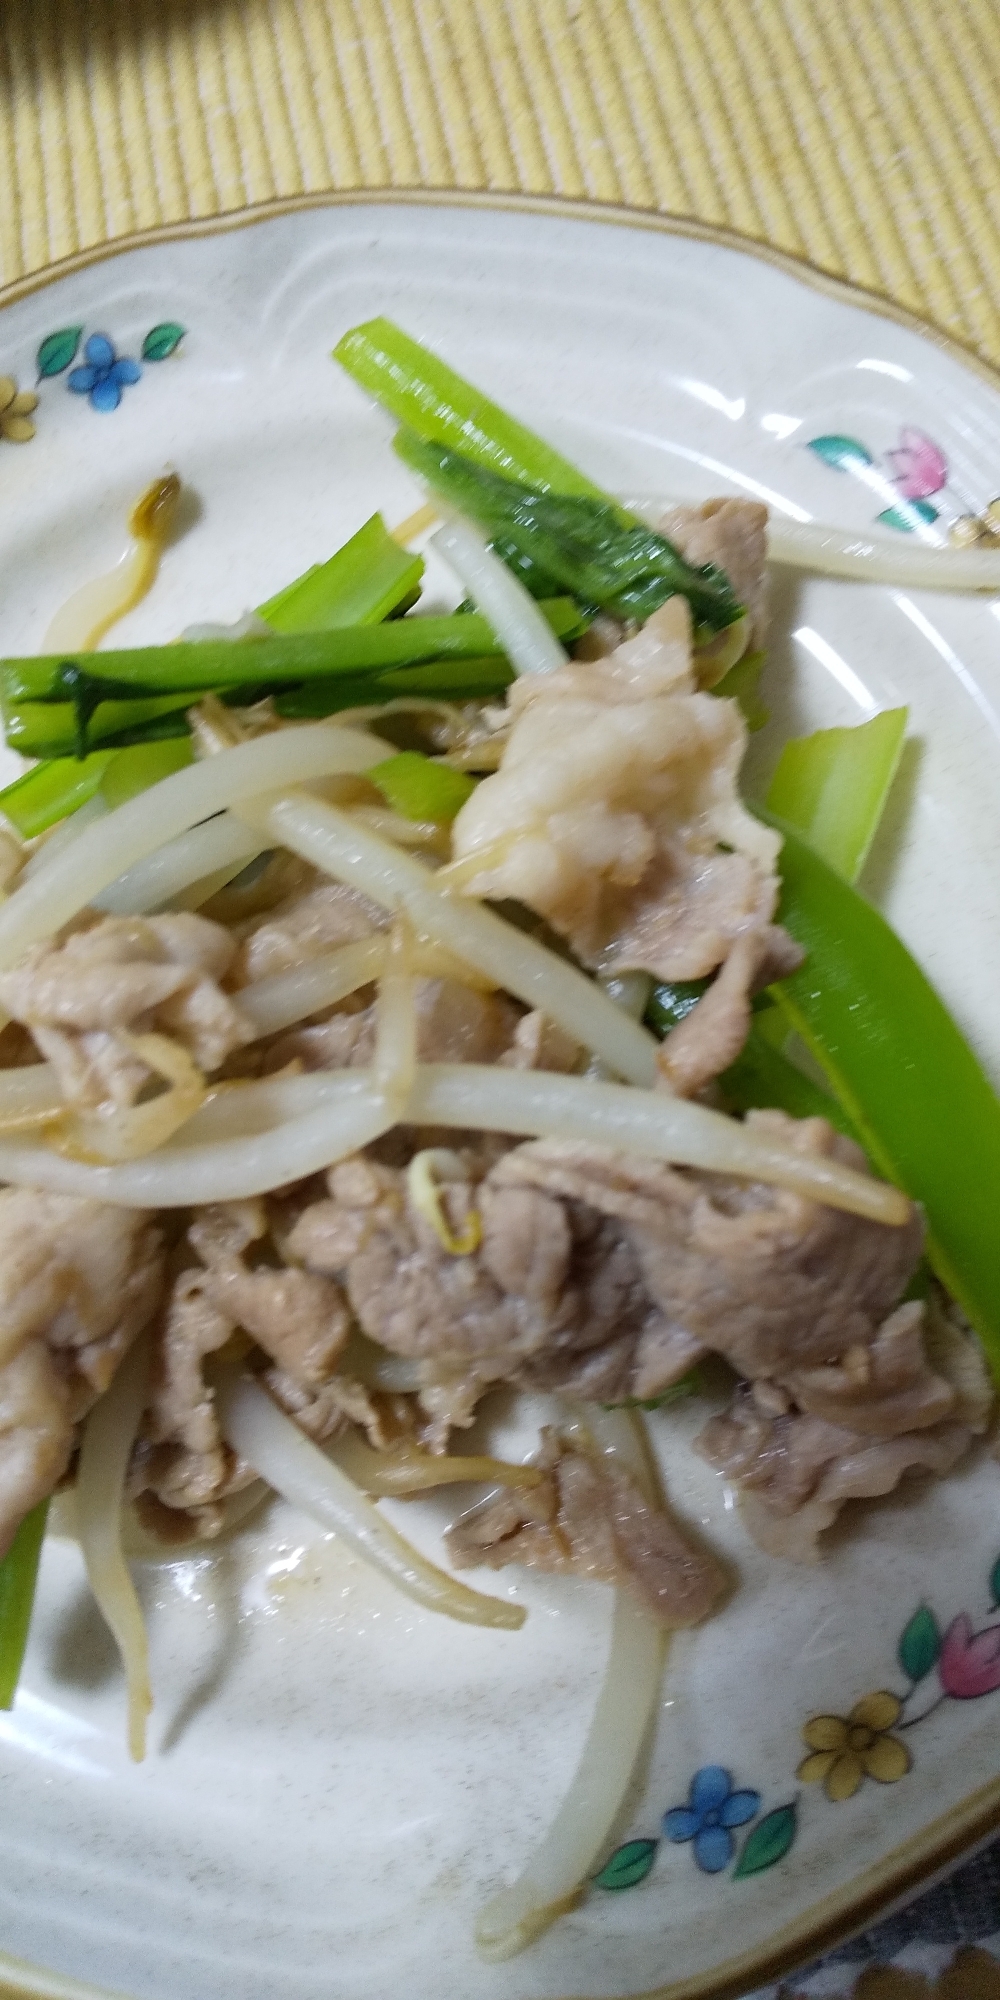 豚肉と野菜の中華風炒め物